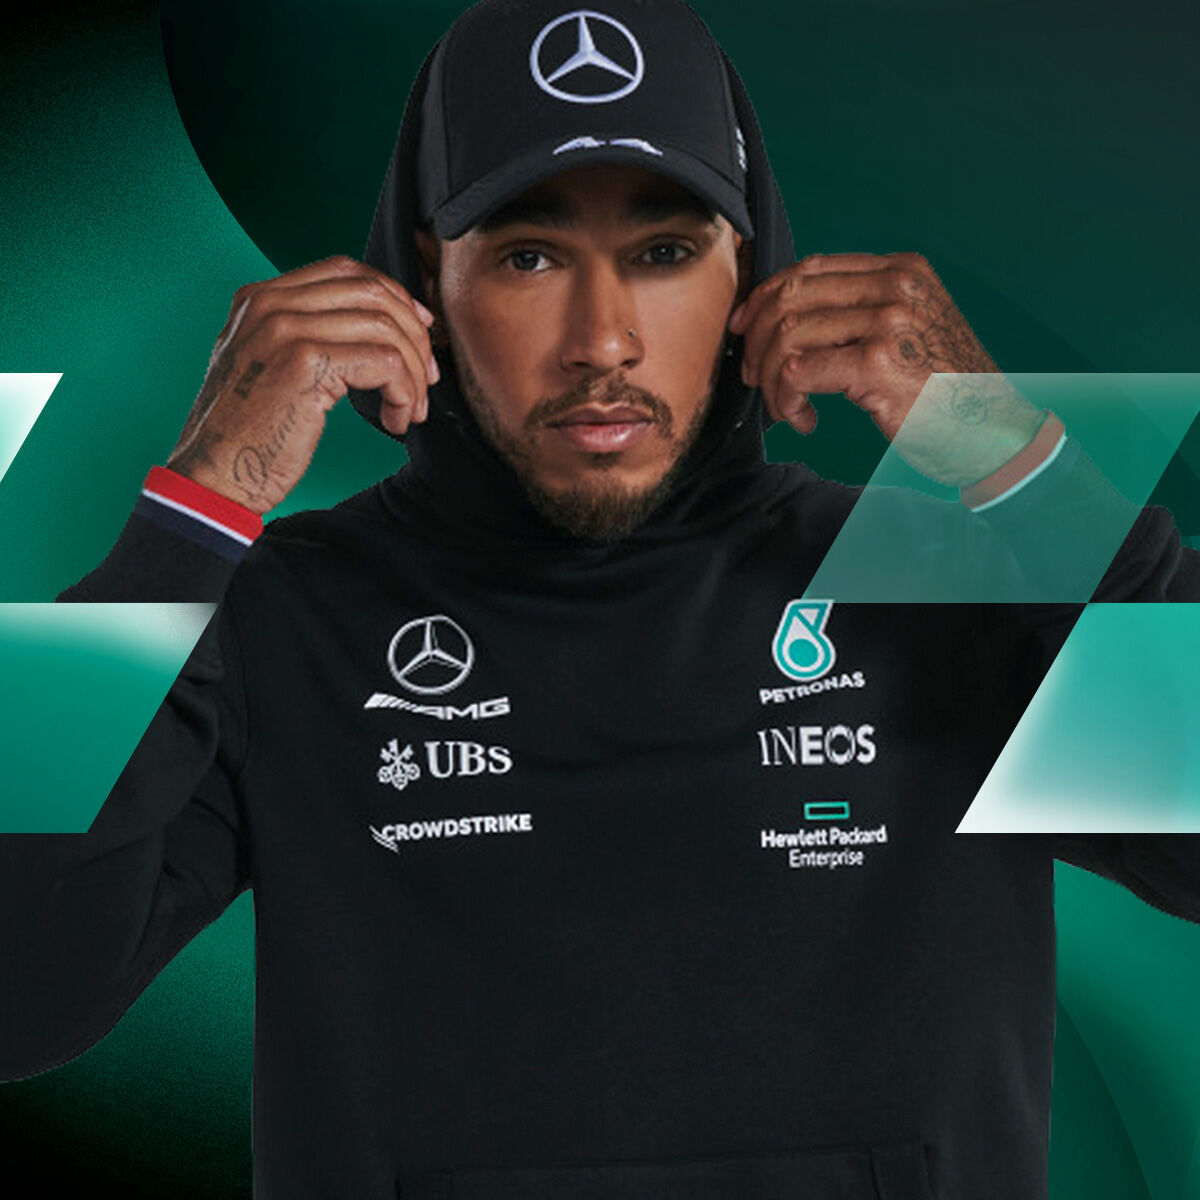 XS Blanc Fuel For Fans T-Shirt à Manches Longues de léquipe de Formule 1 2020 Mercedes-AMG Petronas